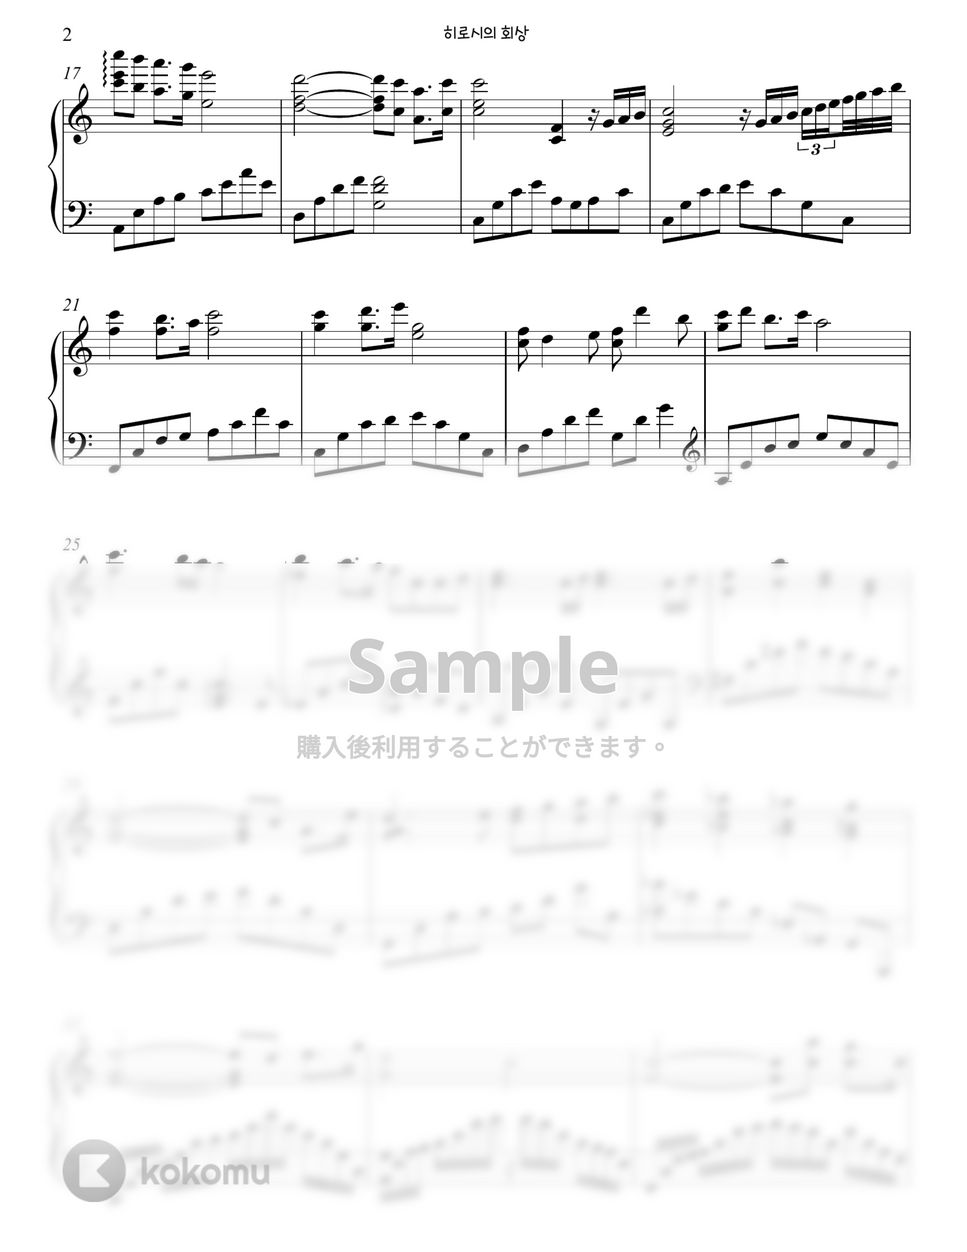 クレヨンしんちゃん OST - ひろしの回想 (派手なバージョン , Easy Transpose key) by Gloria L.